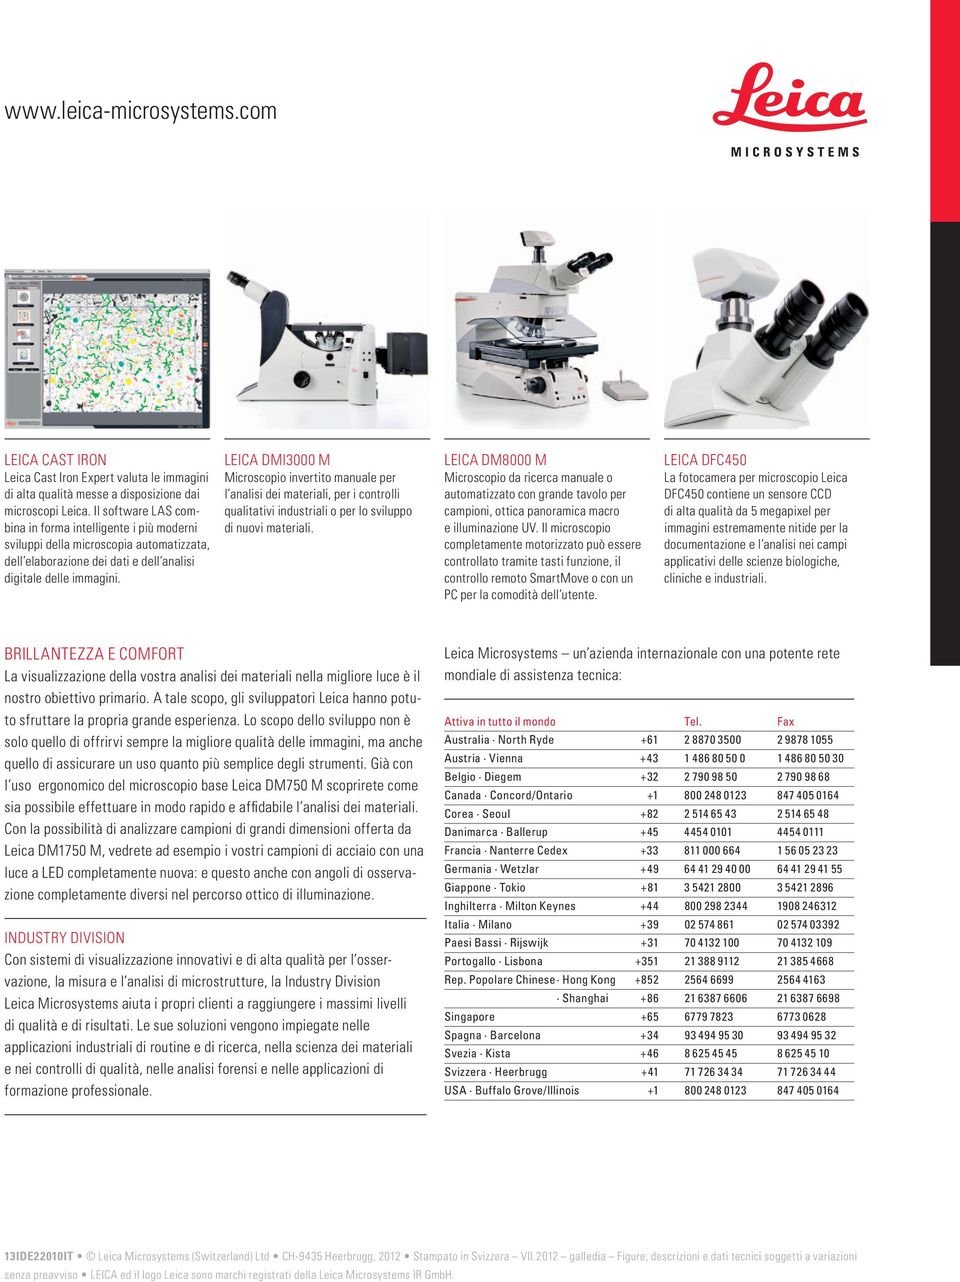 Leica DMI3000 M Microscopio invertito manuale per l analisi dei materiali, per i controlli qualitativi industriali o per lo sviluppo di nuovi materiali.